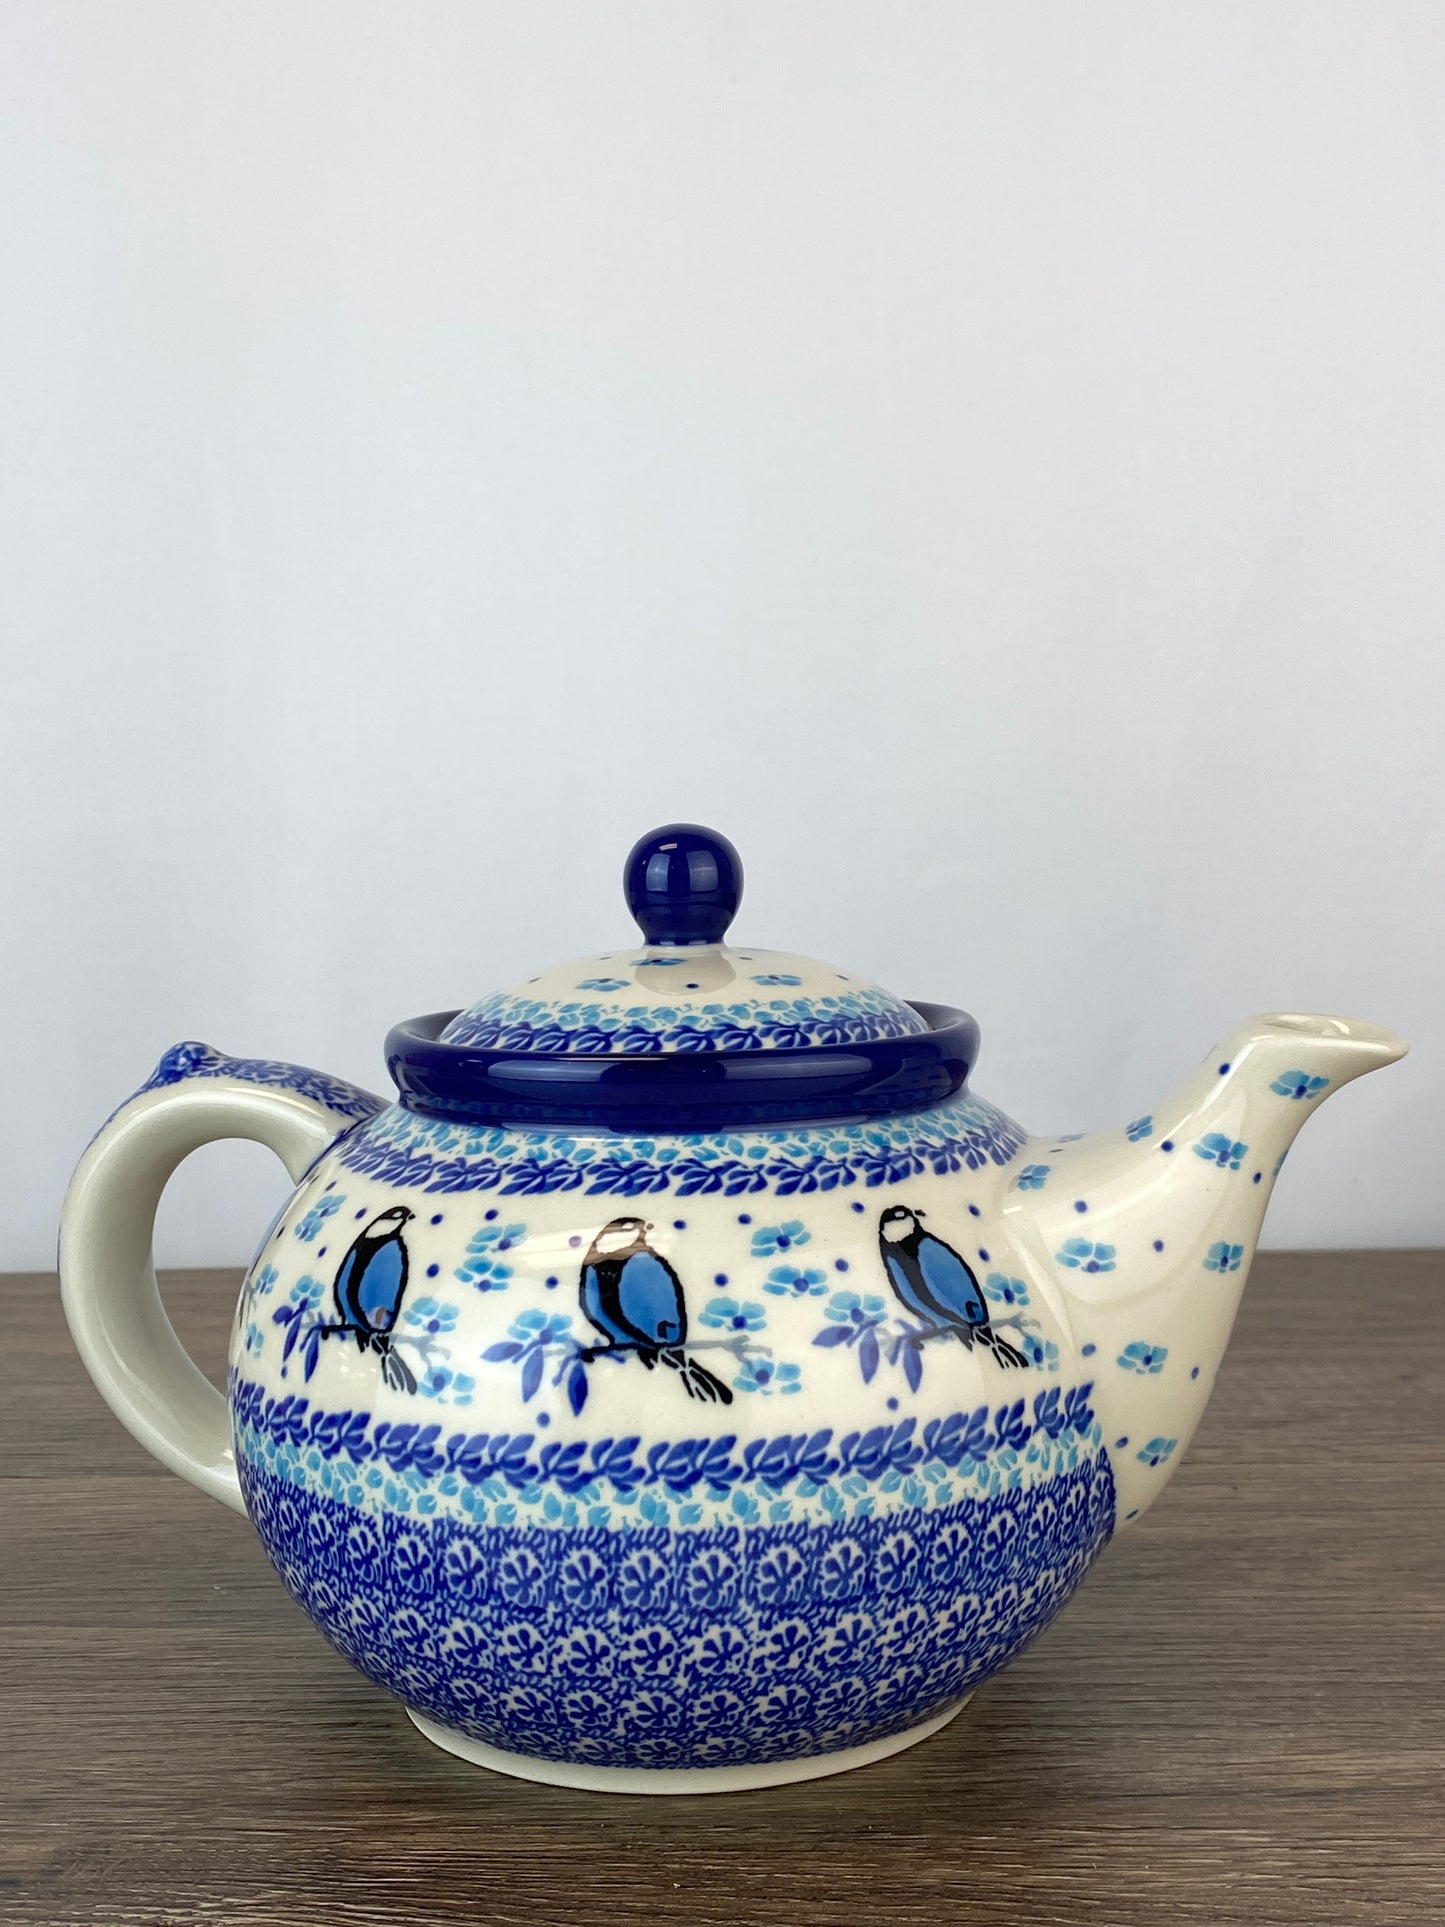 SALE 5 Cup Teapot - Shape 60 - Pattern 2679